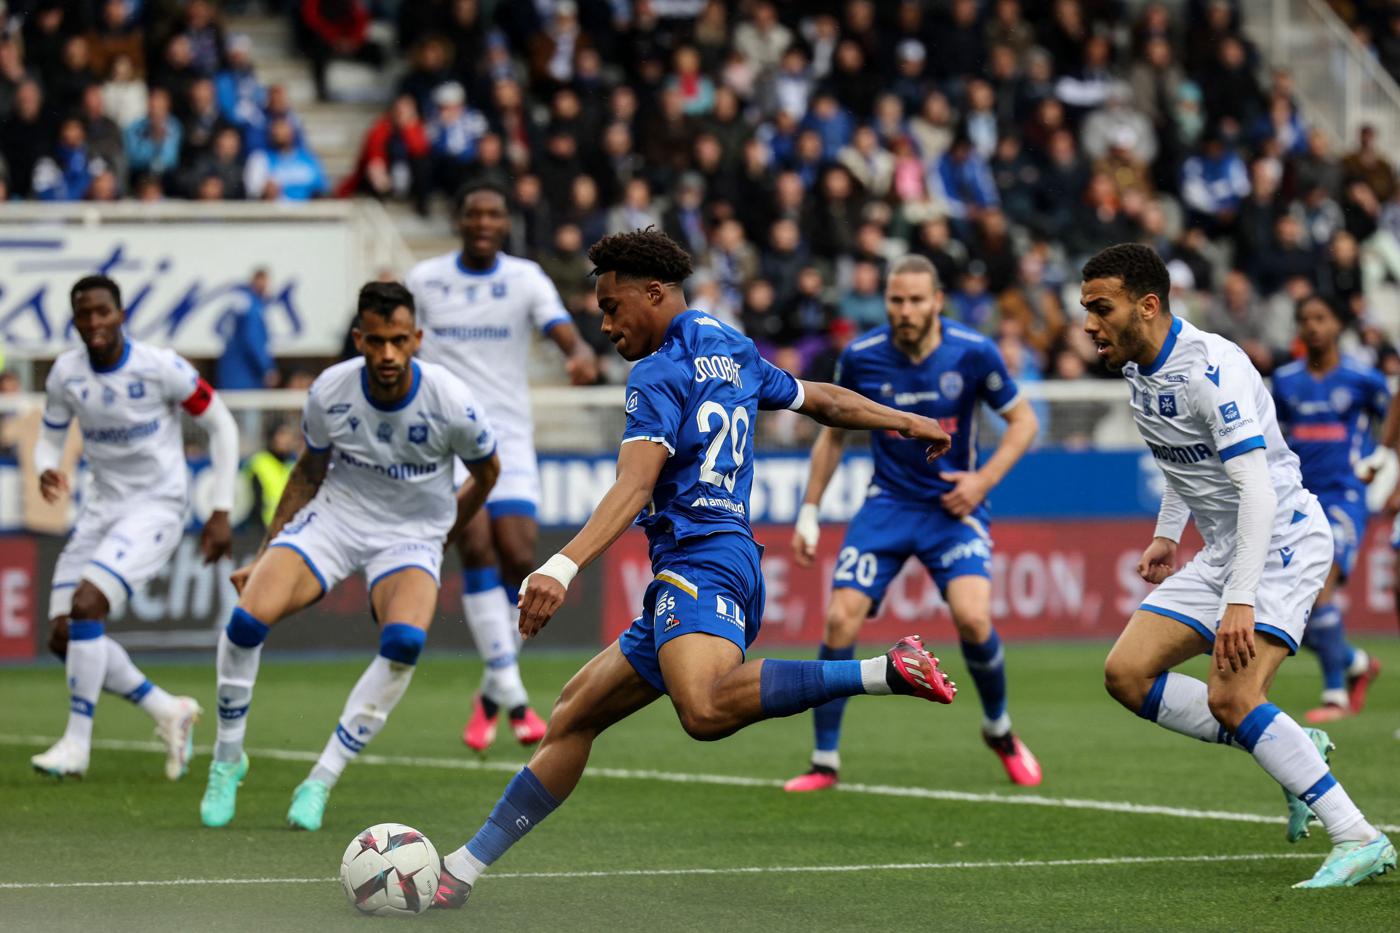 Auxerre - Troyes - 1:0. Mistrzostwa Francji, 29. runda. Przegląd meczu, statystyki